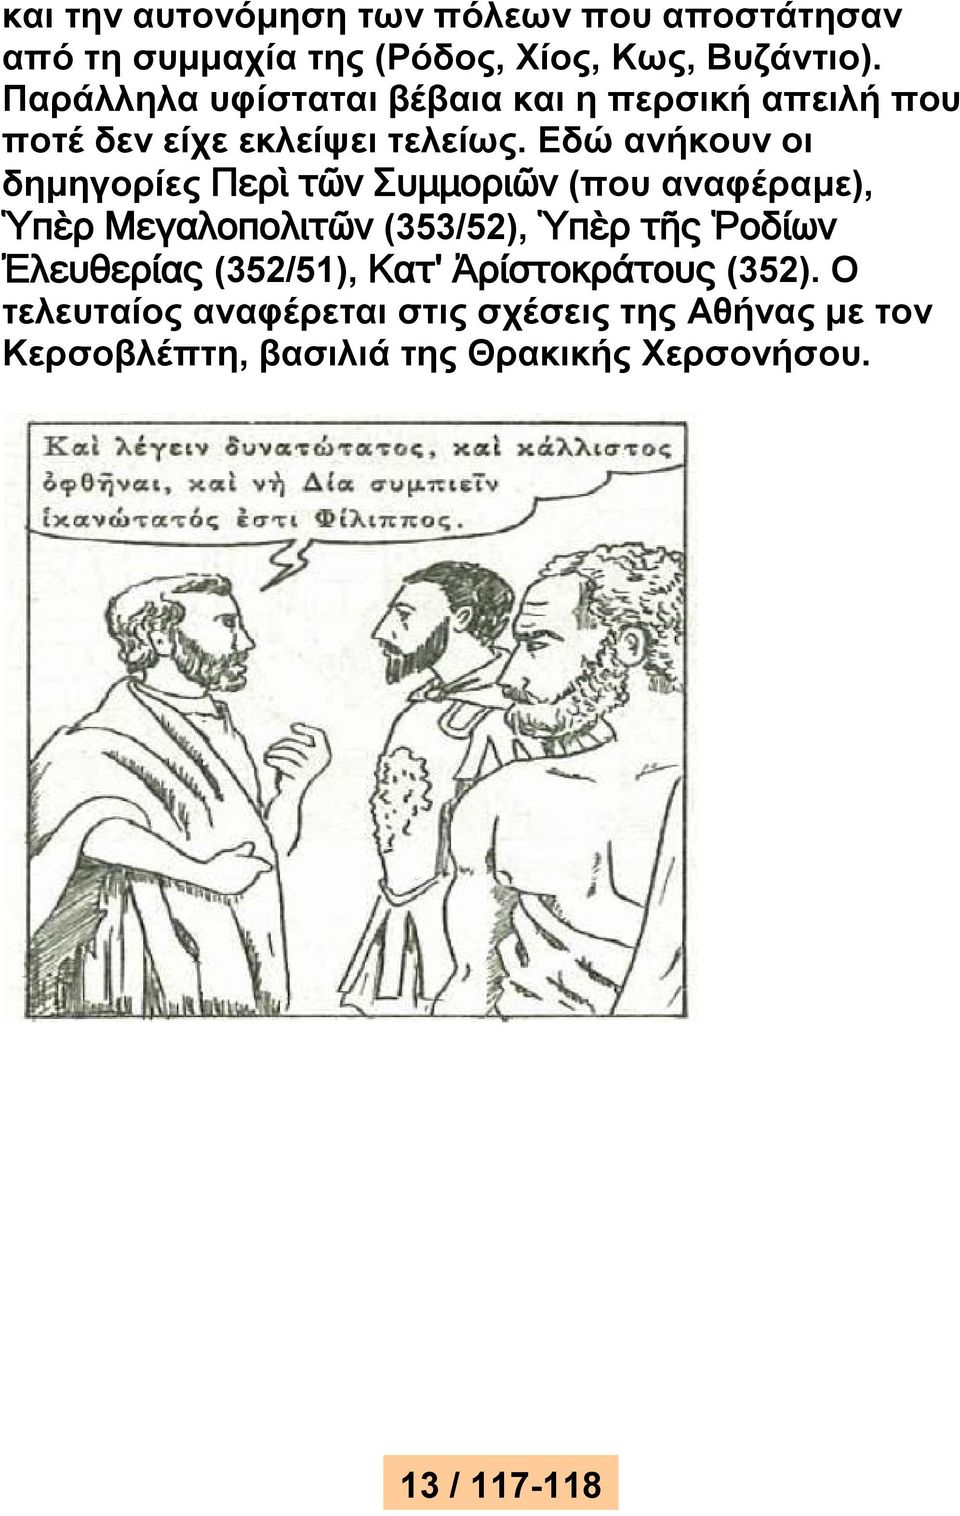 Εδώ ανήκουν οι δημηγορίες Περὶ τῶν Συμμοριῶν (που αναφέραμε), Ὑπὲρ Μεγαλοπολιτῶν (353/52), Ὑπὲρ τῆς Ῥοδίων